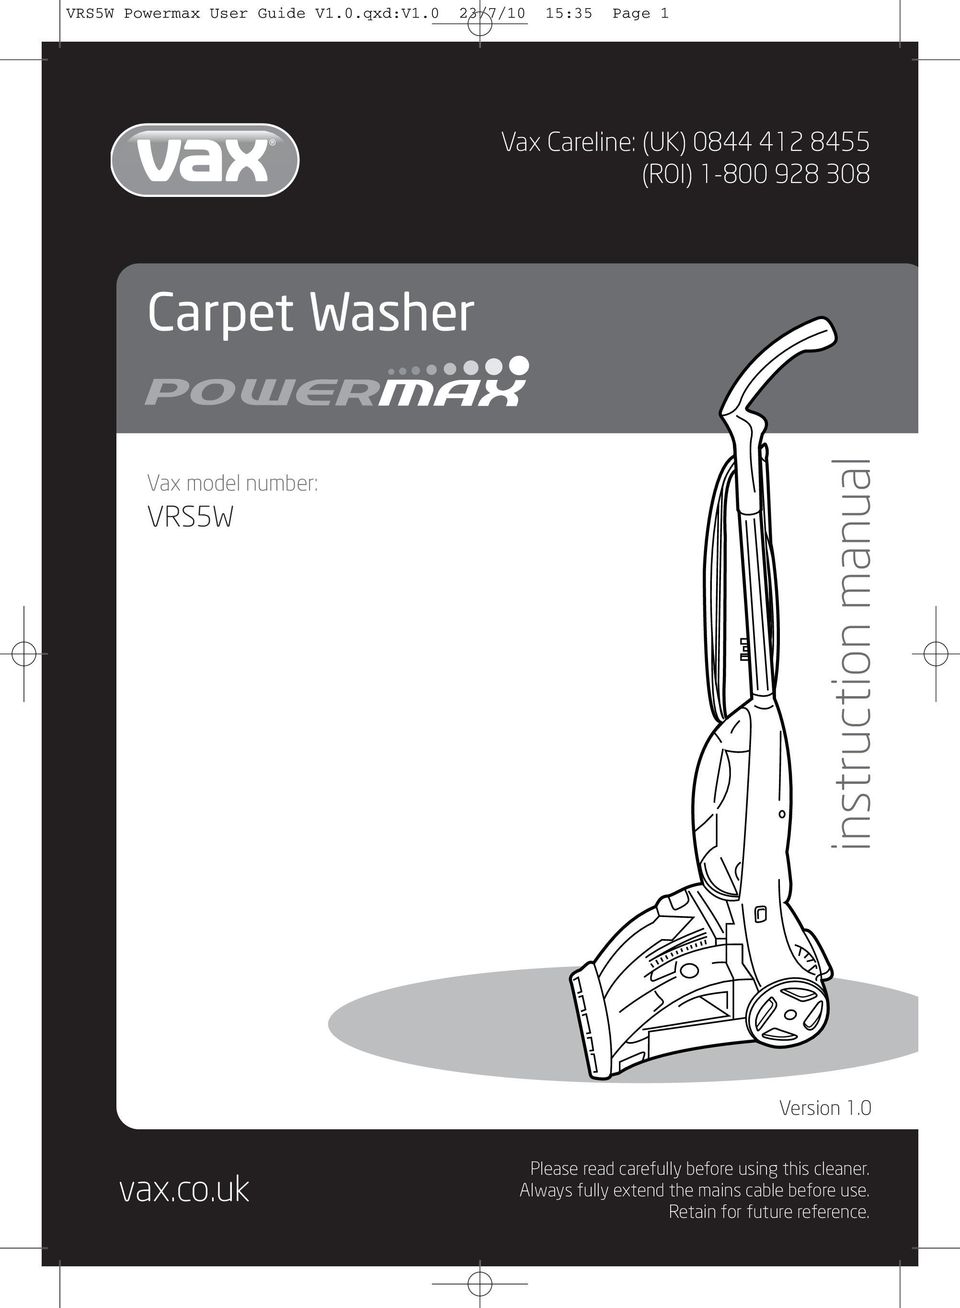 Carpet Washer Vax model number: VRS5W instruction manual Version 1.